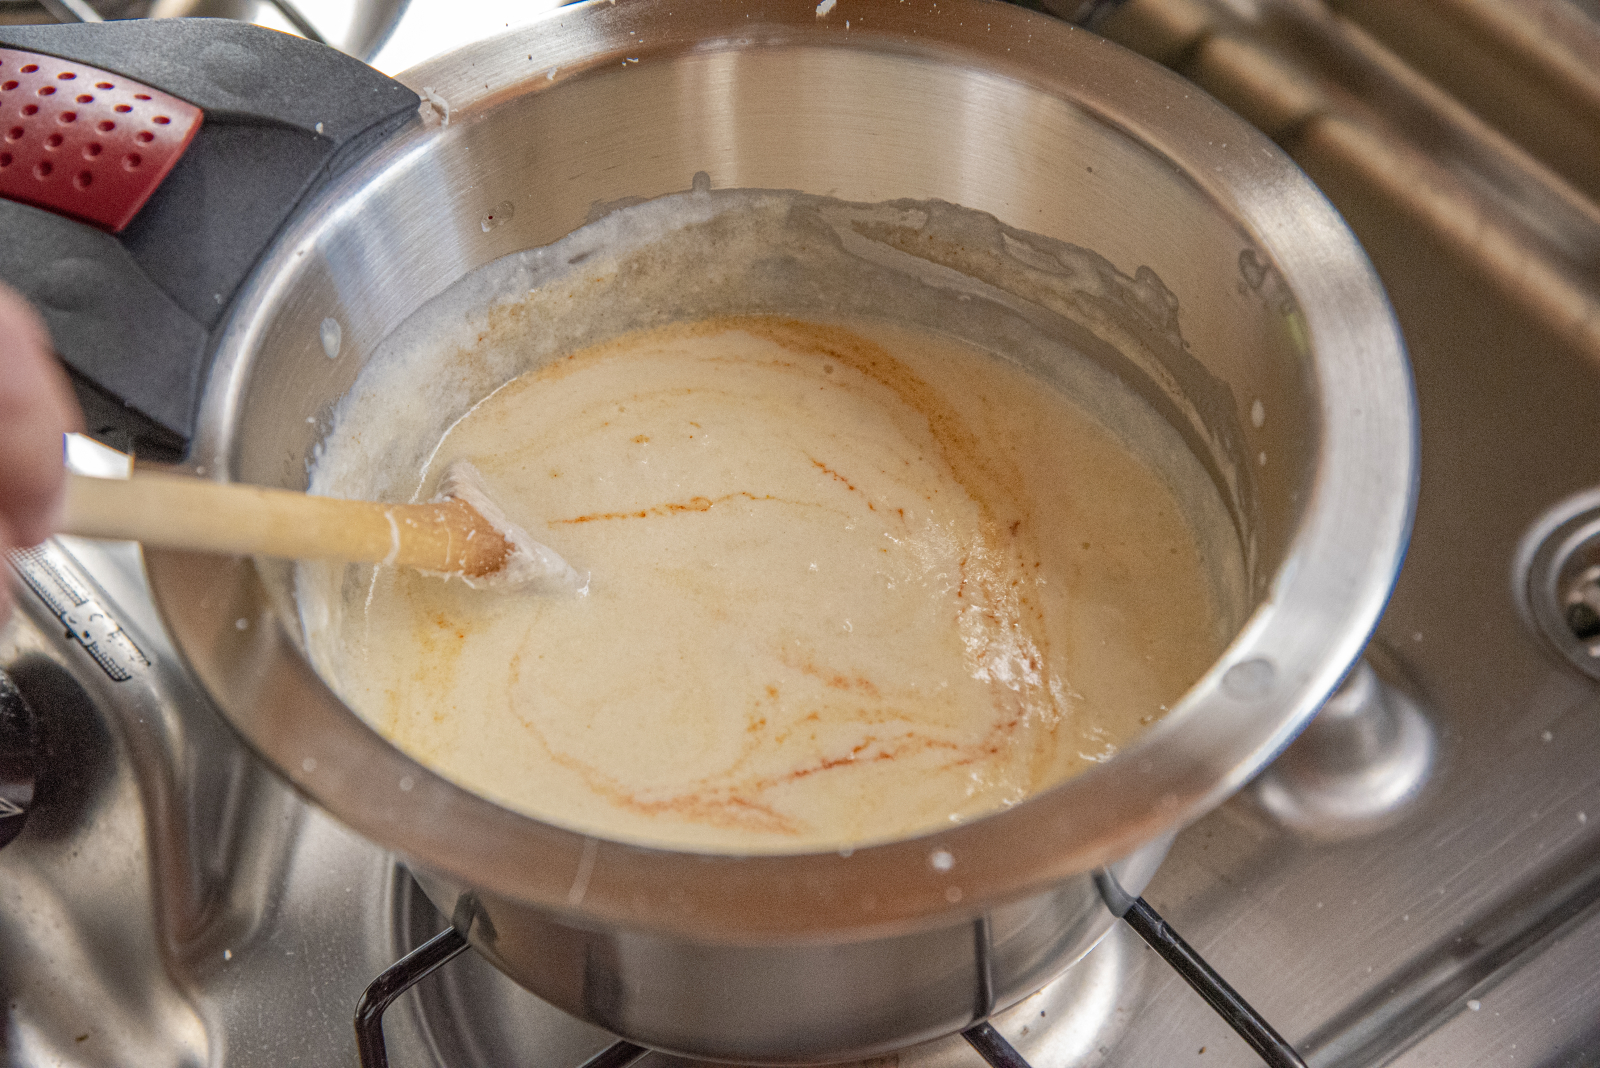 Nudelauflauf mit Chorizo - In die Milch-Sahne-Mischung dürfen ruhig mehrere Spritzer Tabasco, da die Nudeln die Schärfe binden.